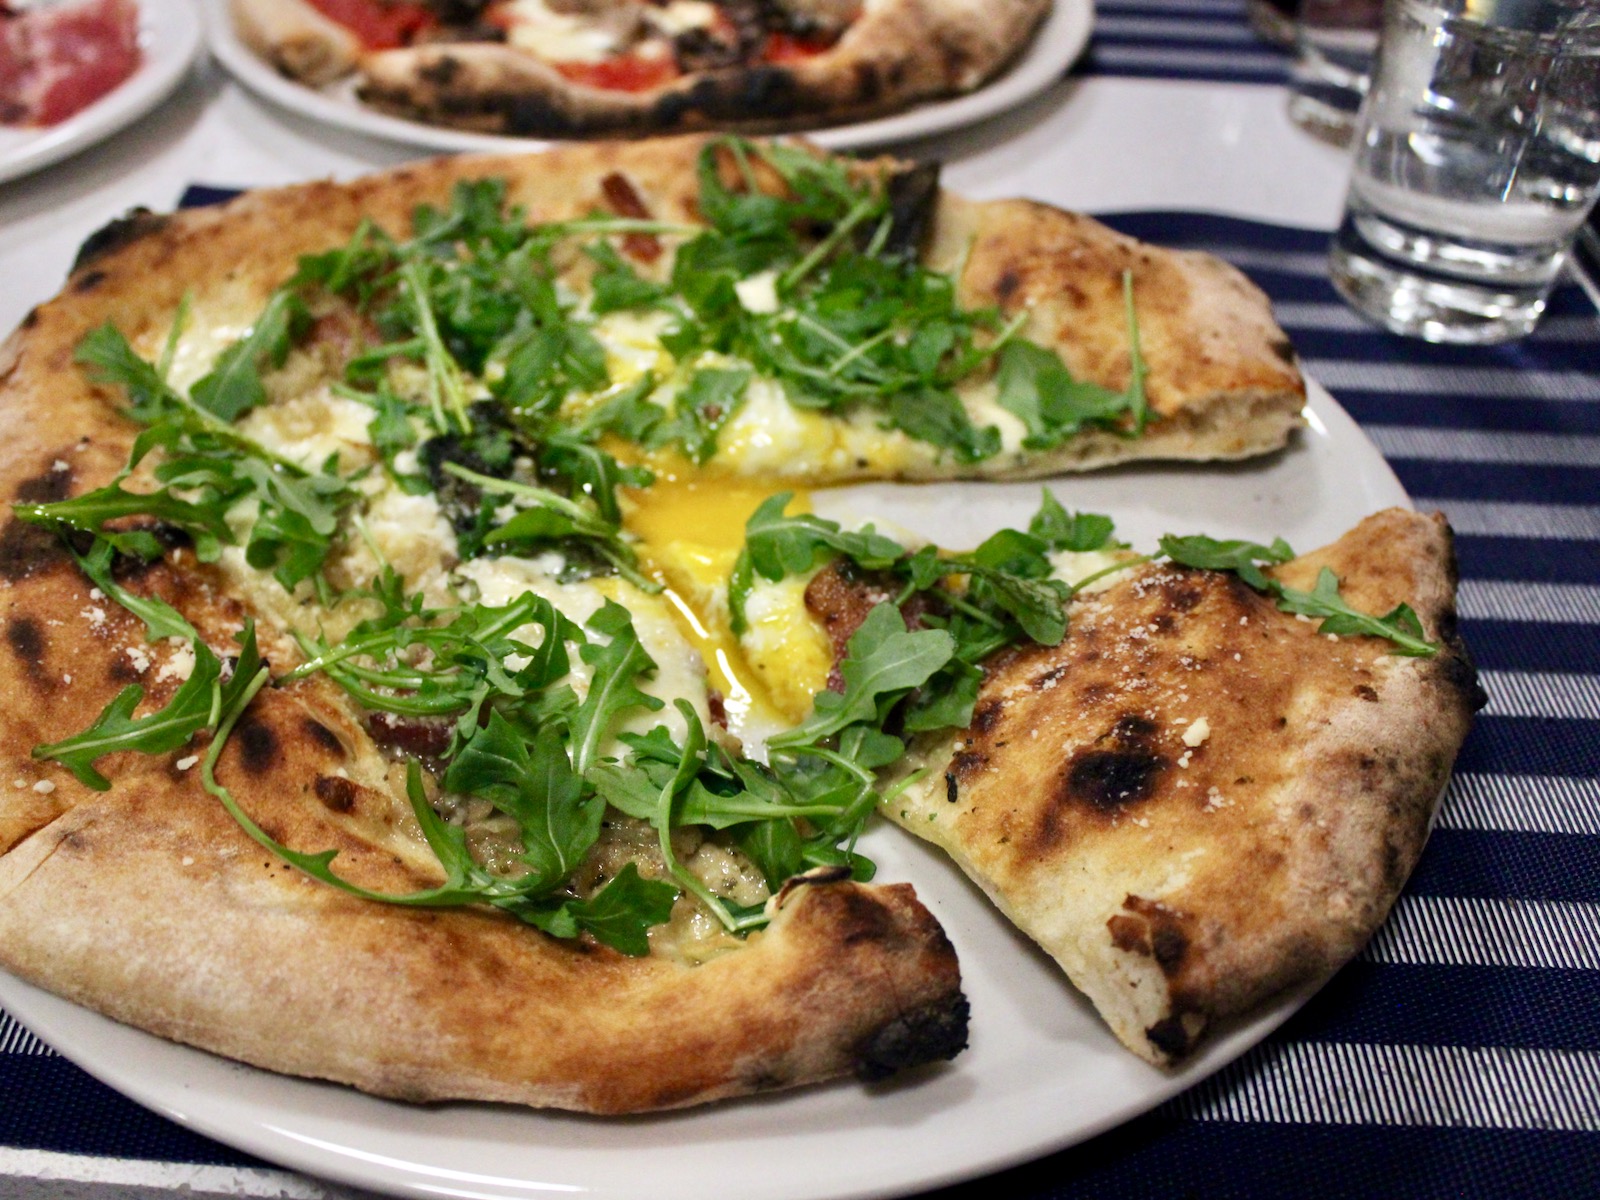 Neapolitan style pizza from San Giorgio